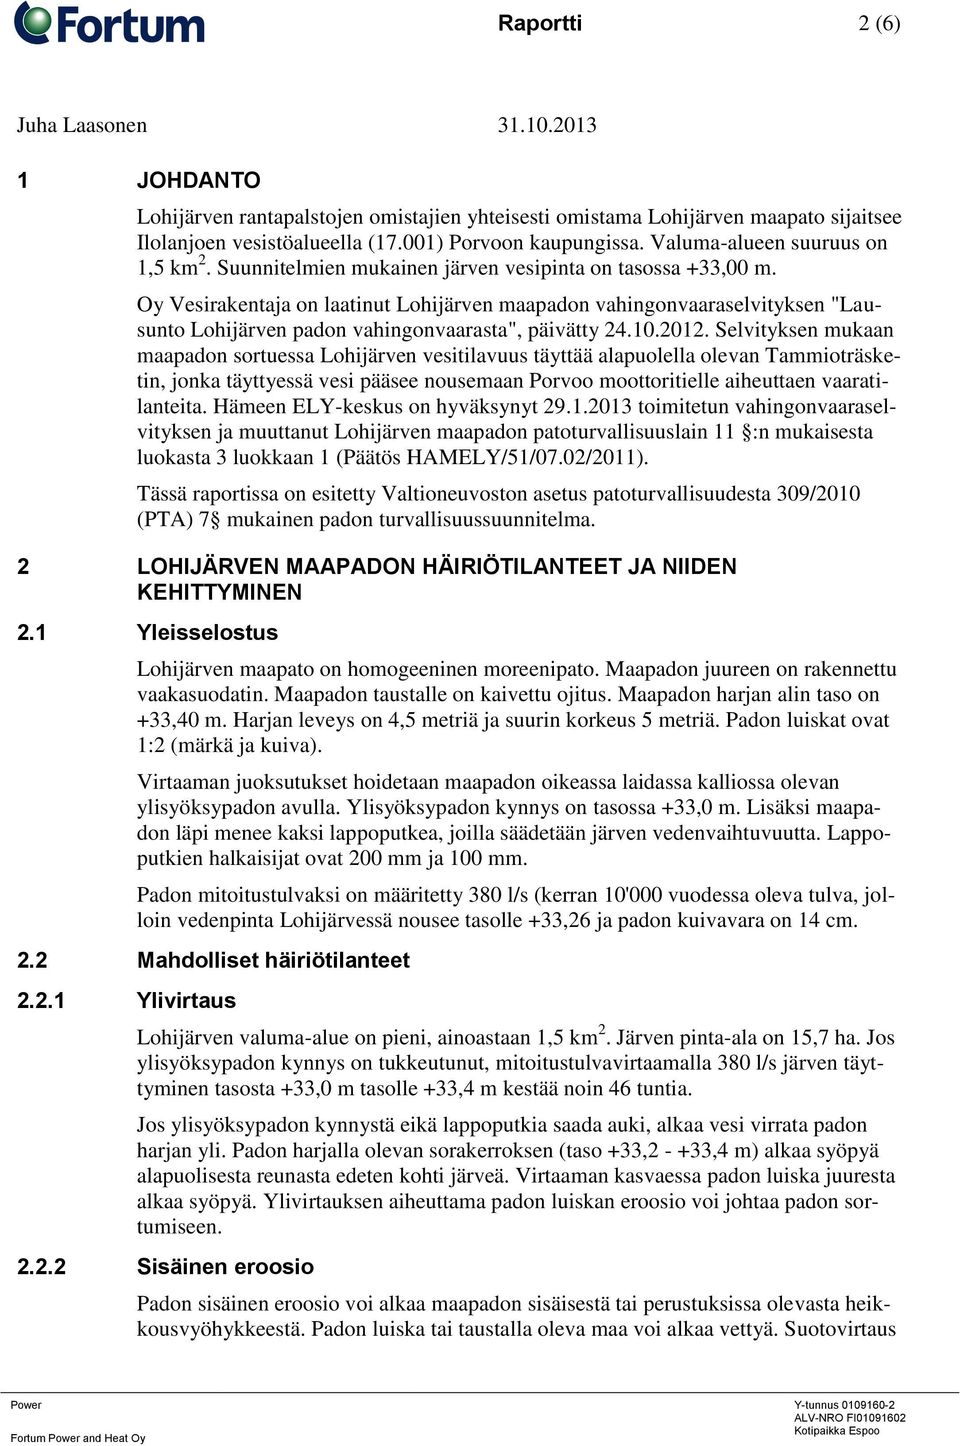 Oy Vesirakentaja on laatinut Lohijärven maapadon vahingonvaaraselvityksen "Lausunto Lohijärven padon vahingonvaarasta", päivätty 24.10.2012.